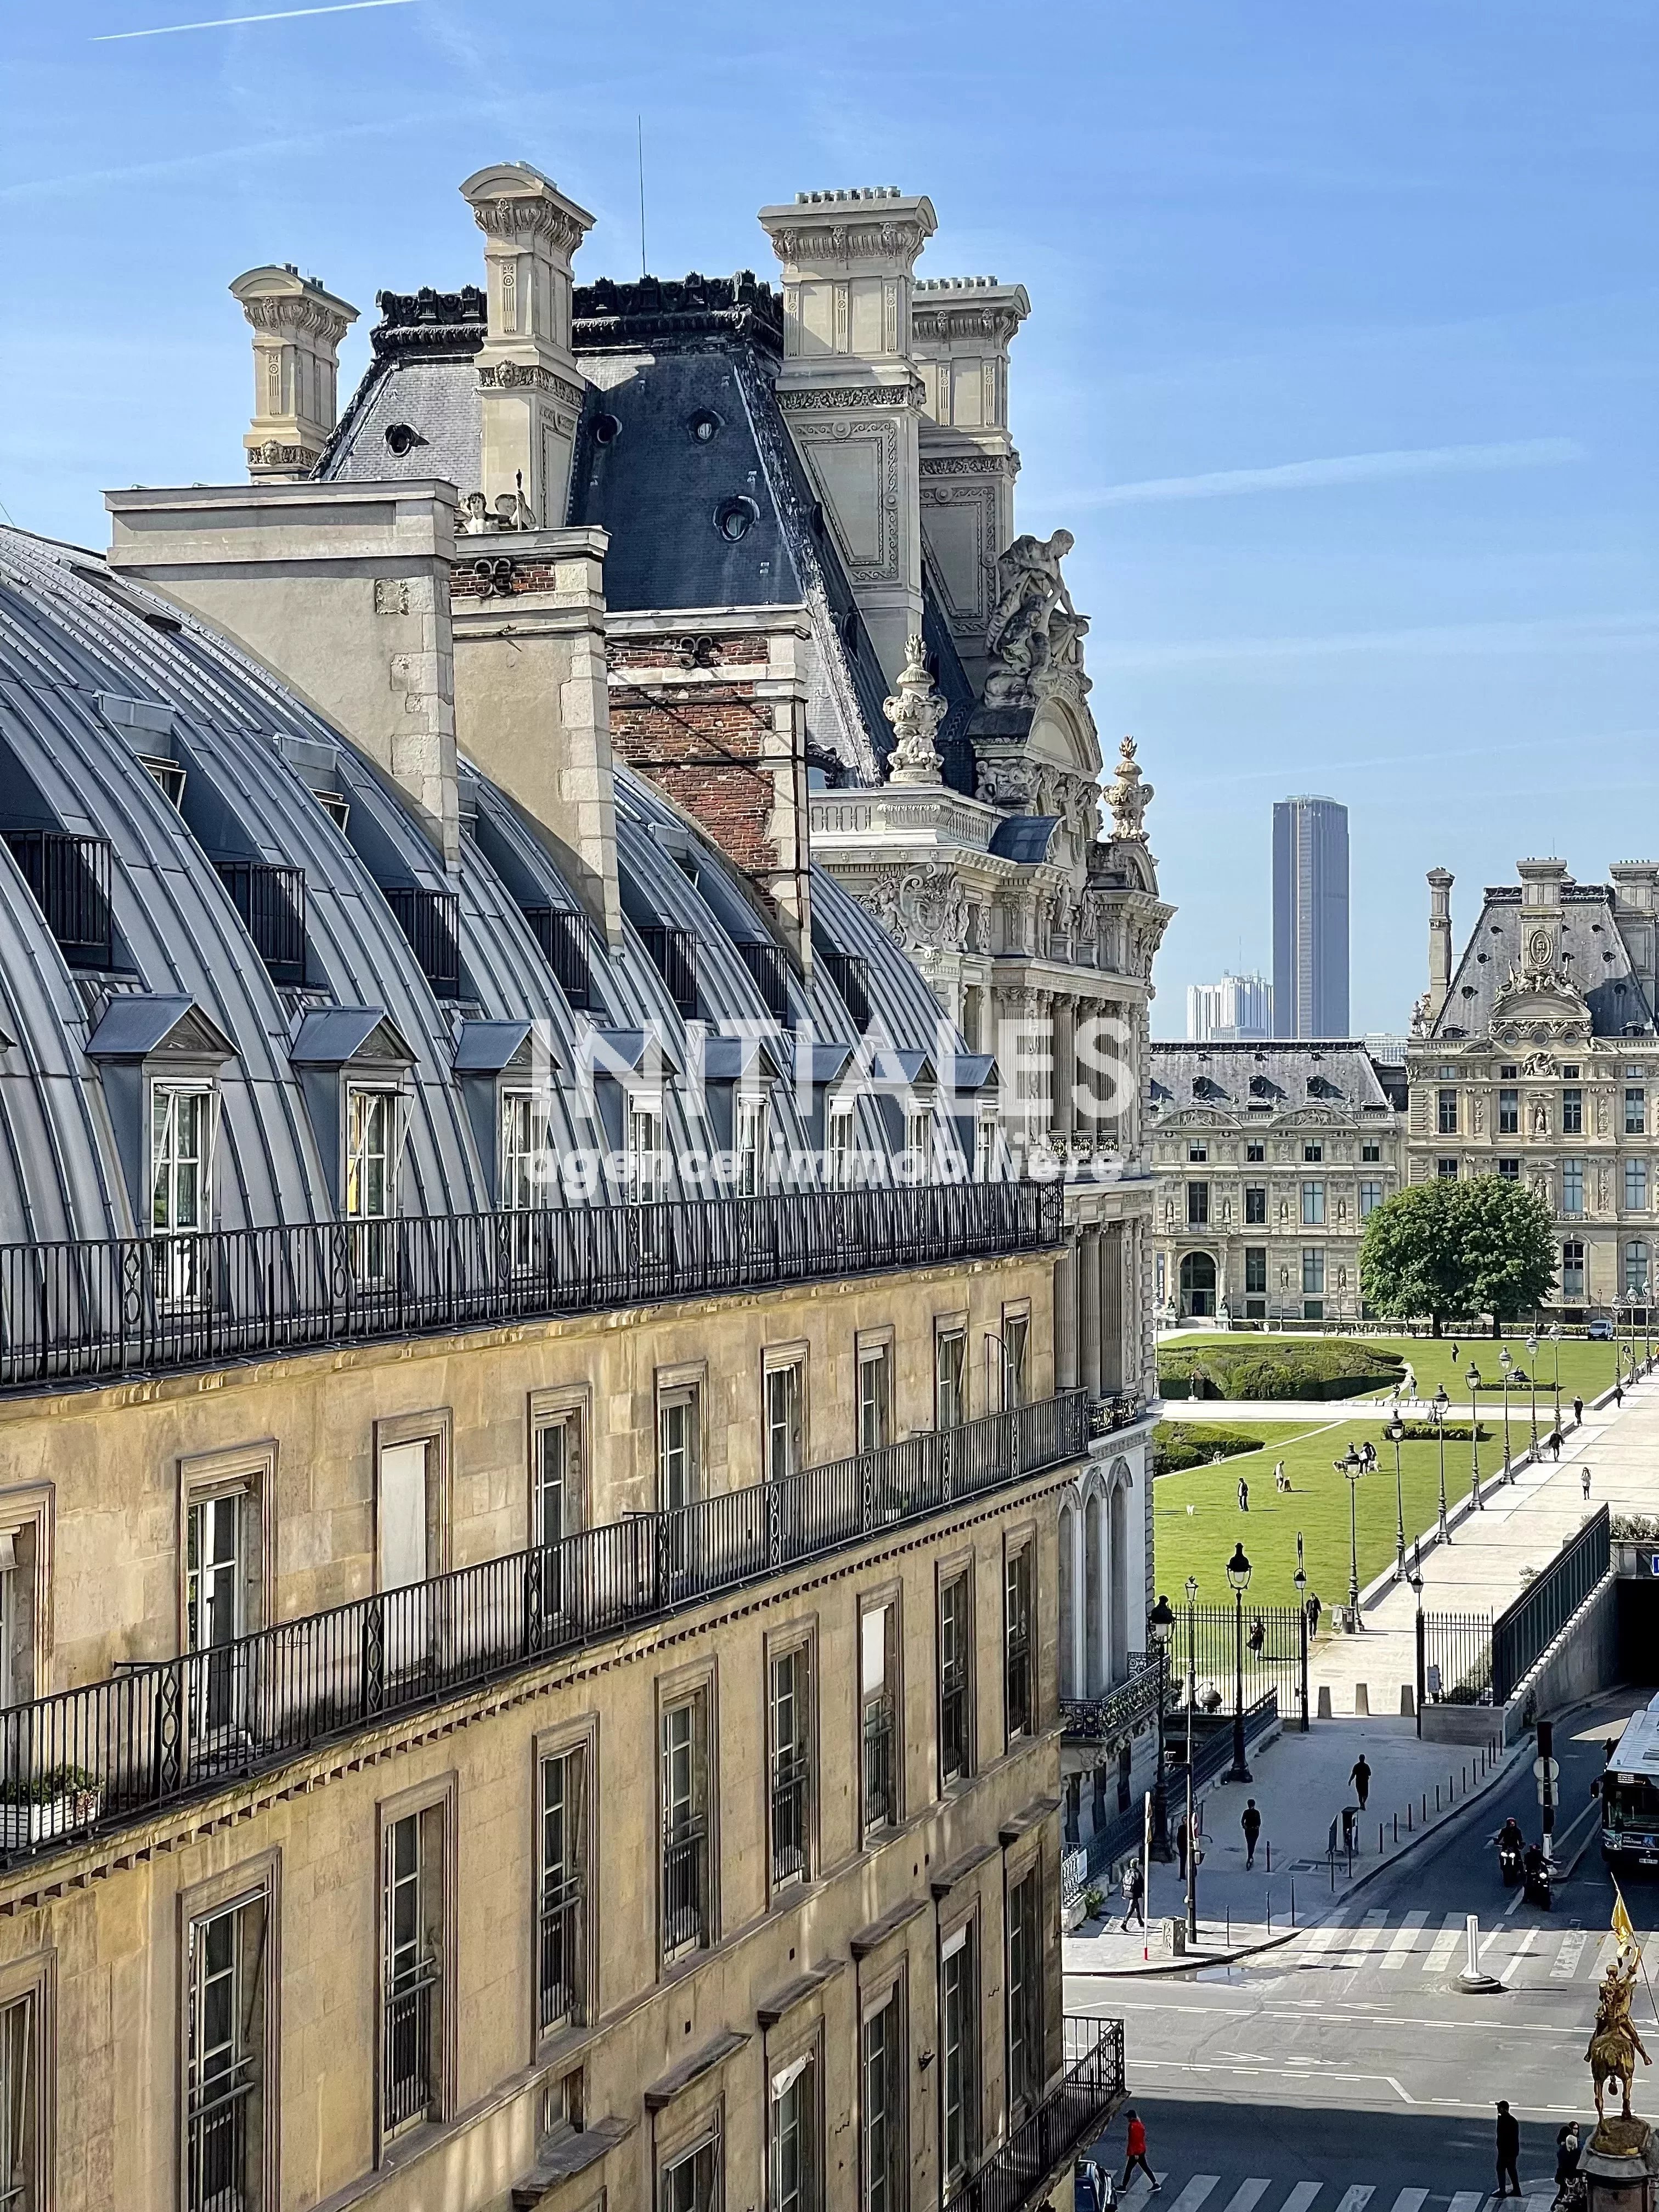 Sale Apartment - Paris 1st (Paris 1er) Palais-Royal